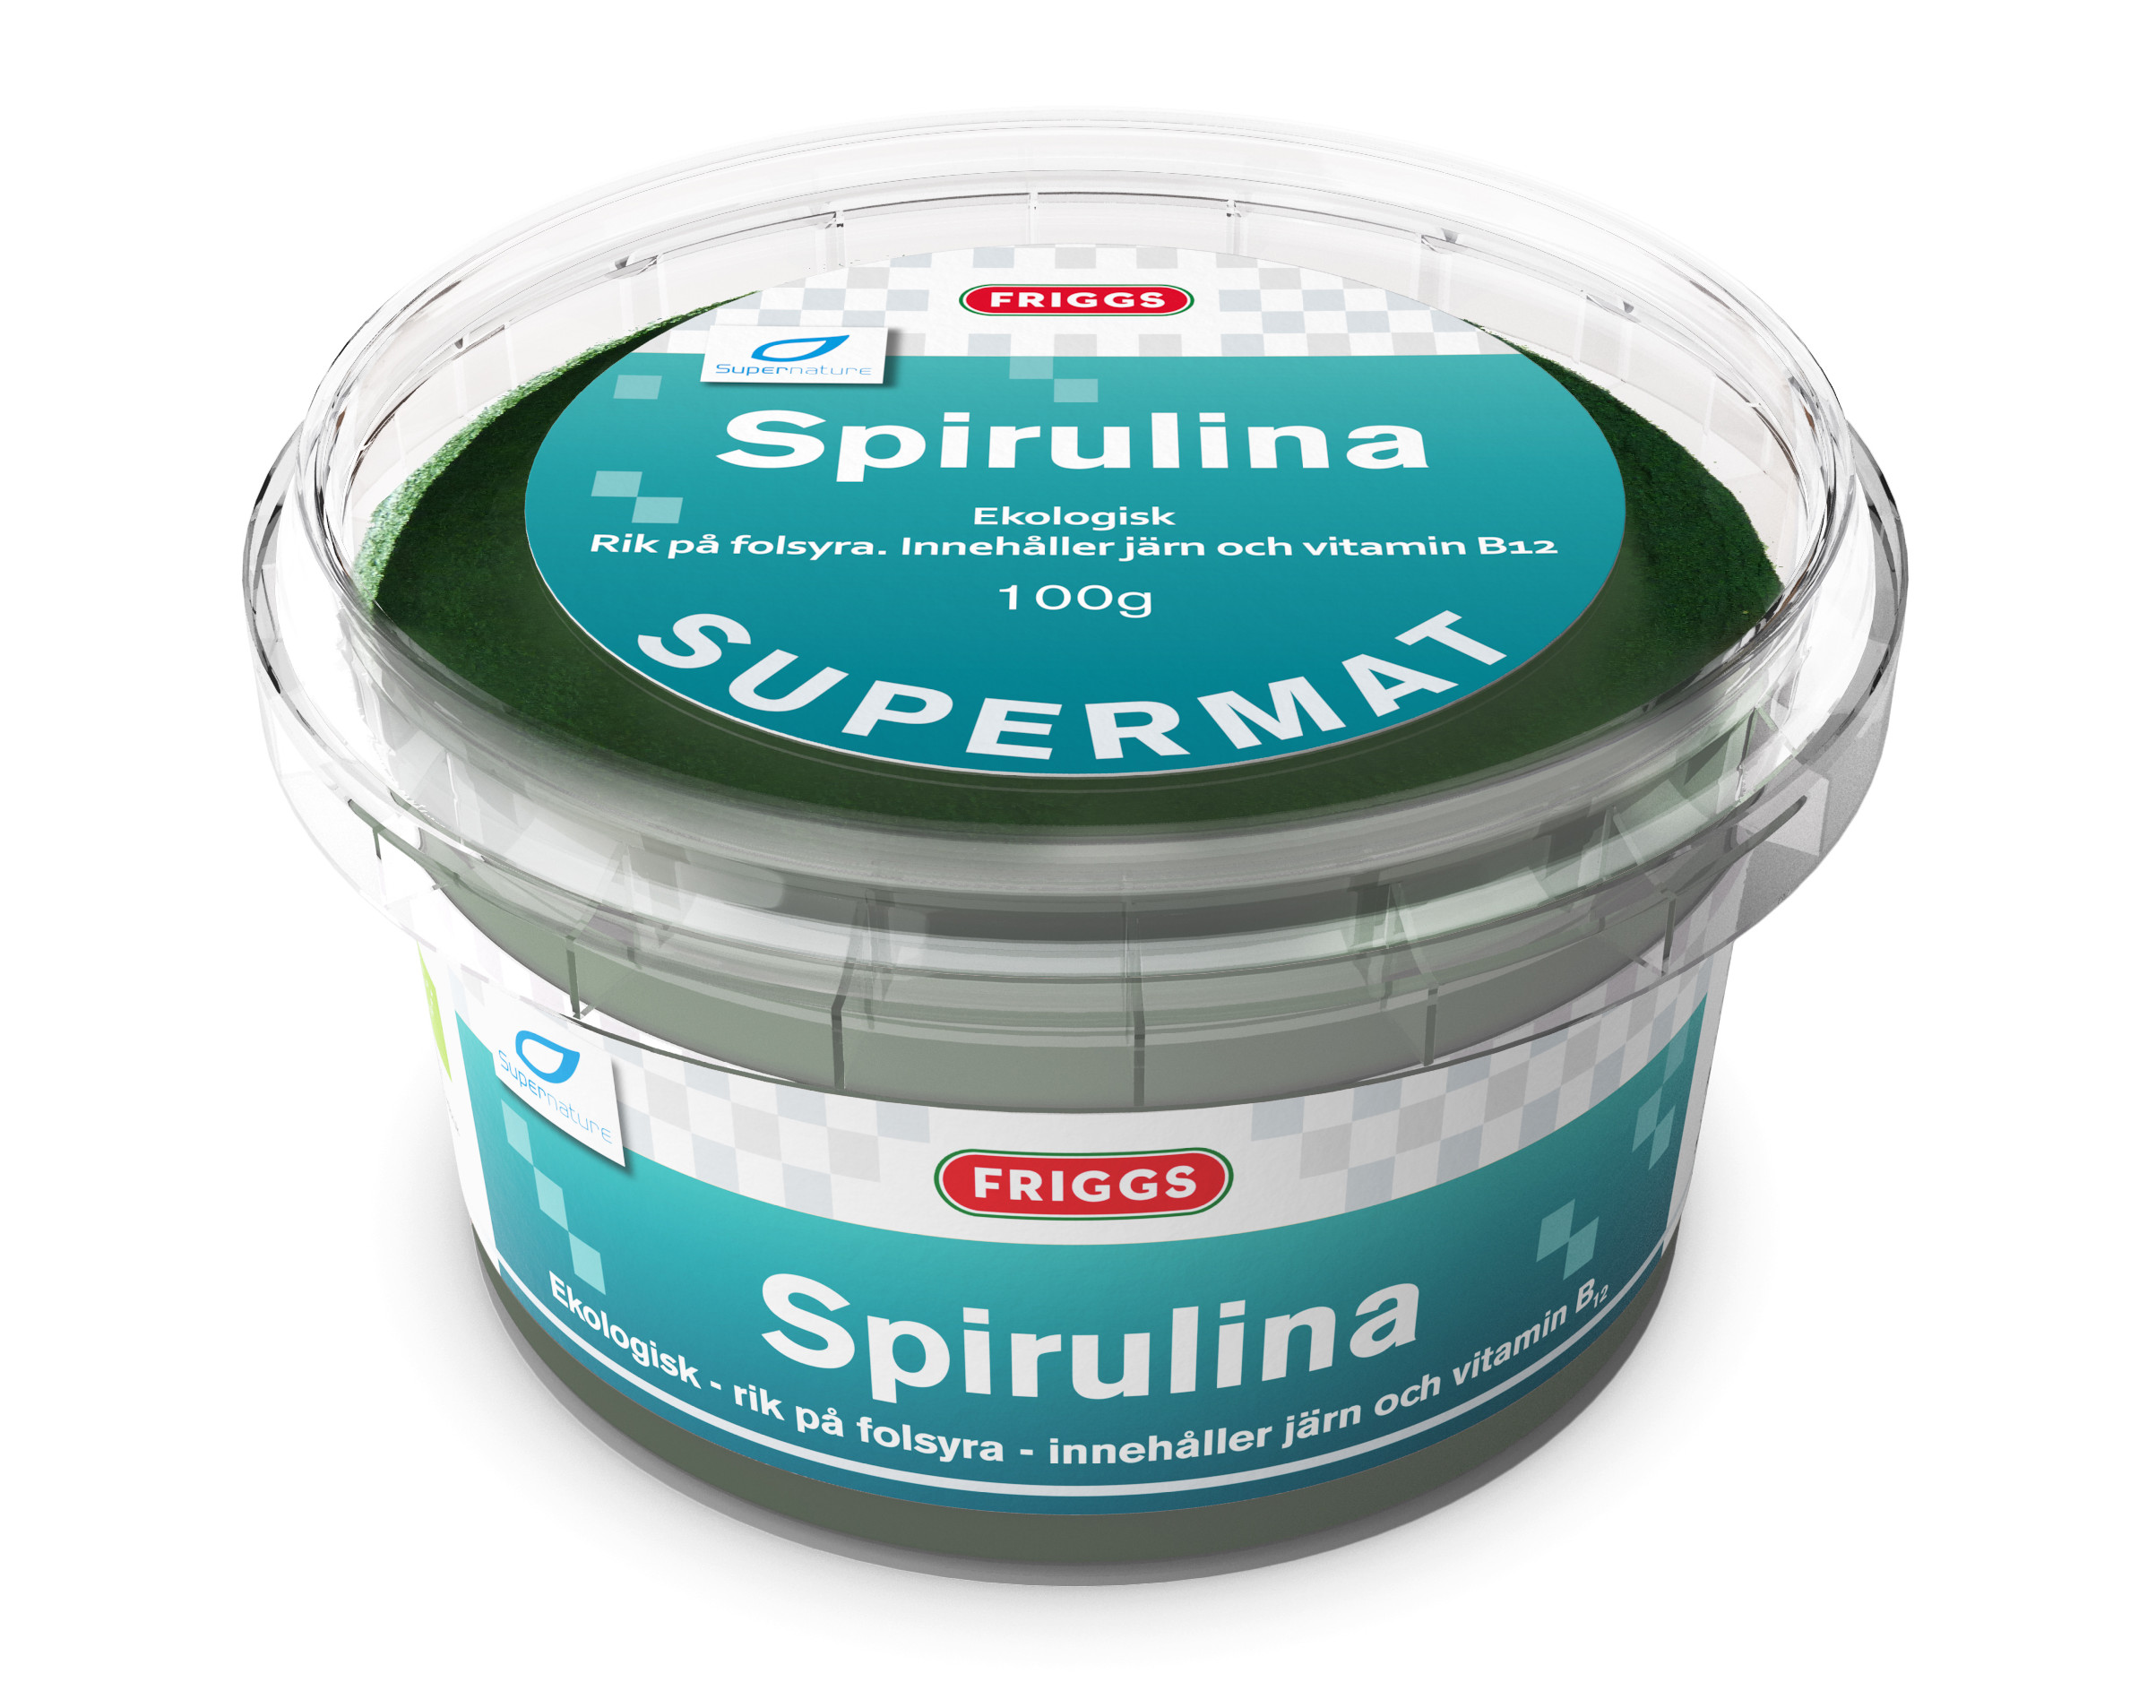 Friggs Spirulina Supermat